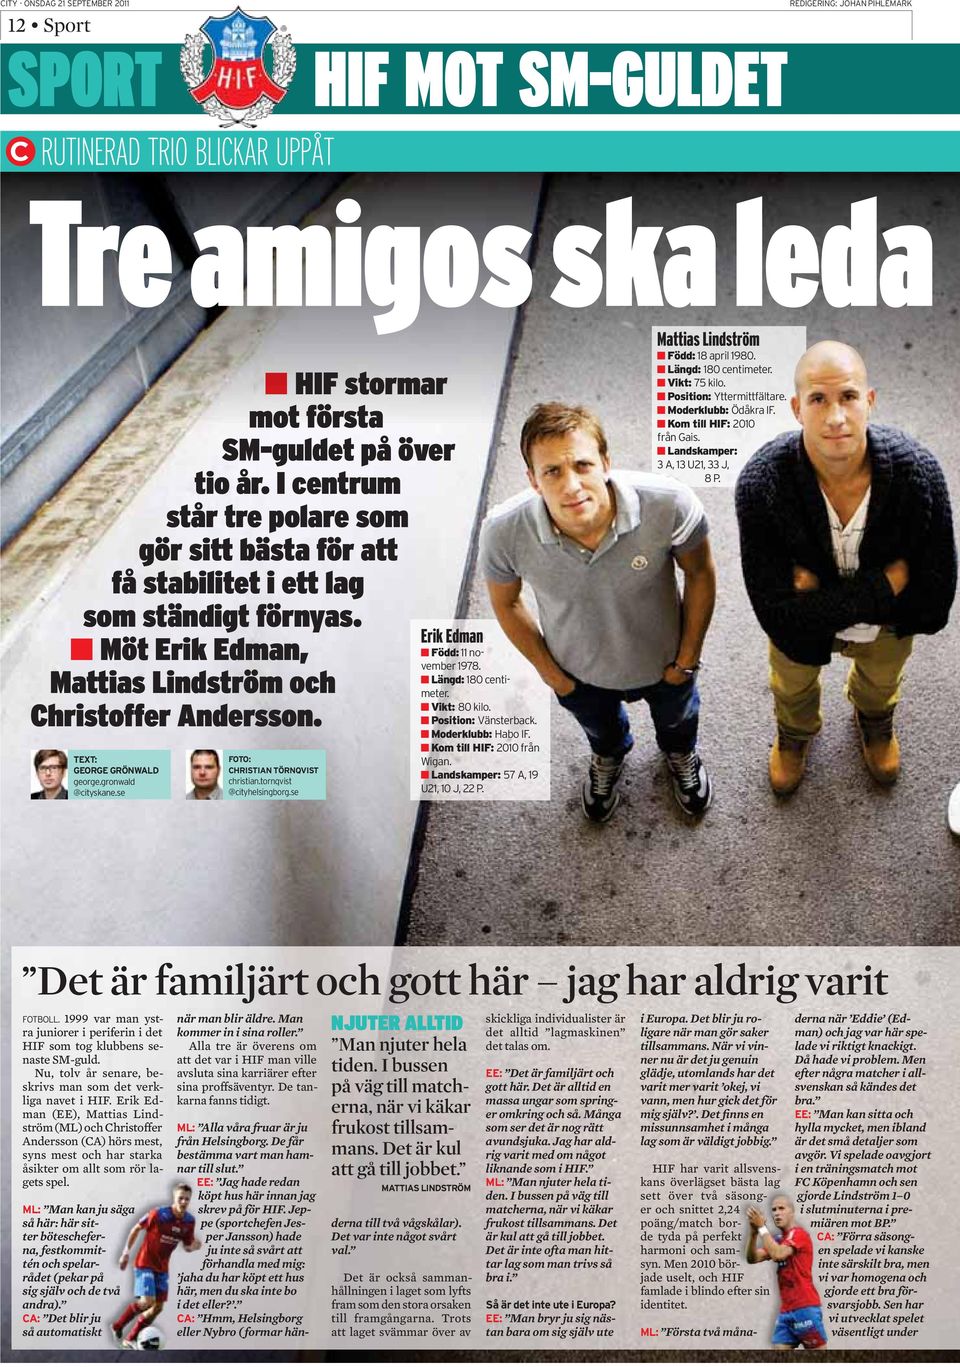 Erik Edman (EE), Mattias Lindström (ML) och Christoffer Andersson (CA) hörs mest, syns mest och har starka åsikter om allt som rör lagets spel.